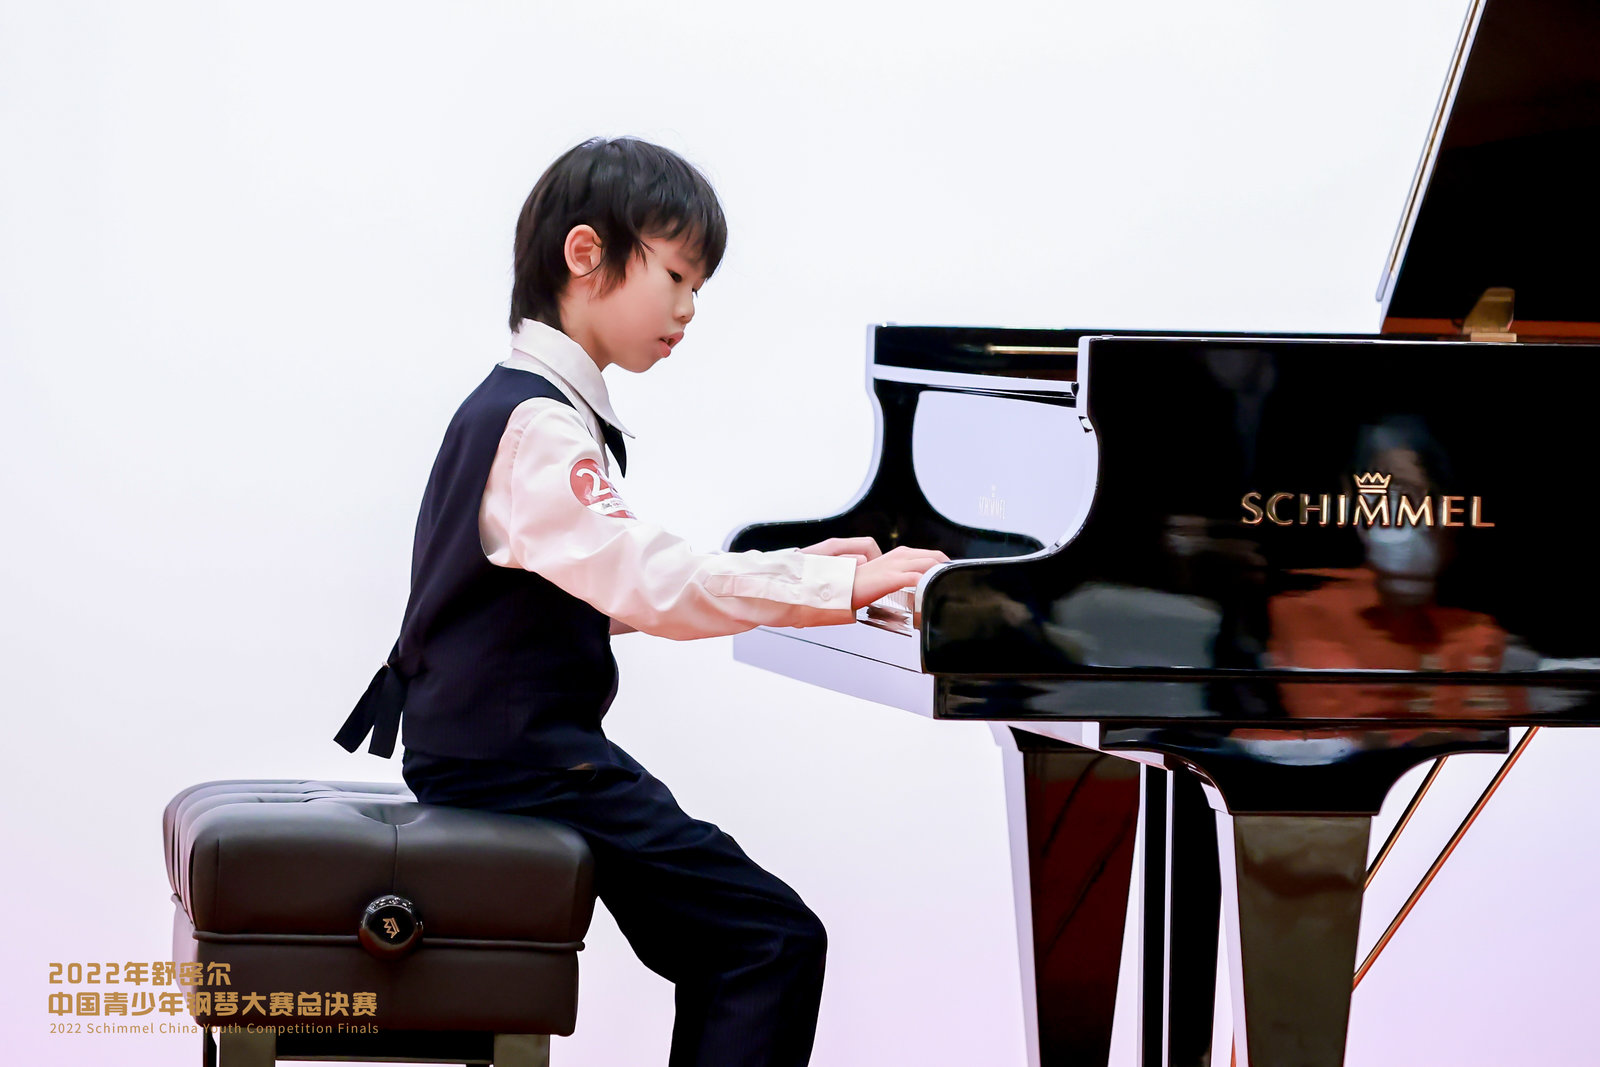 【获奖名单】2022年舒密尔中国青少年钢琴大赛总决赛专业组、高校组、业余组